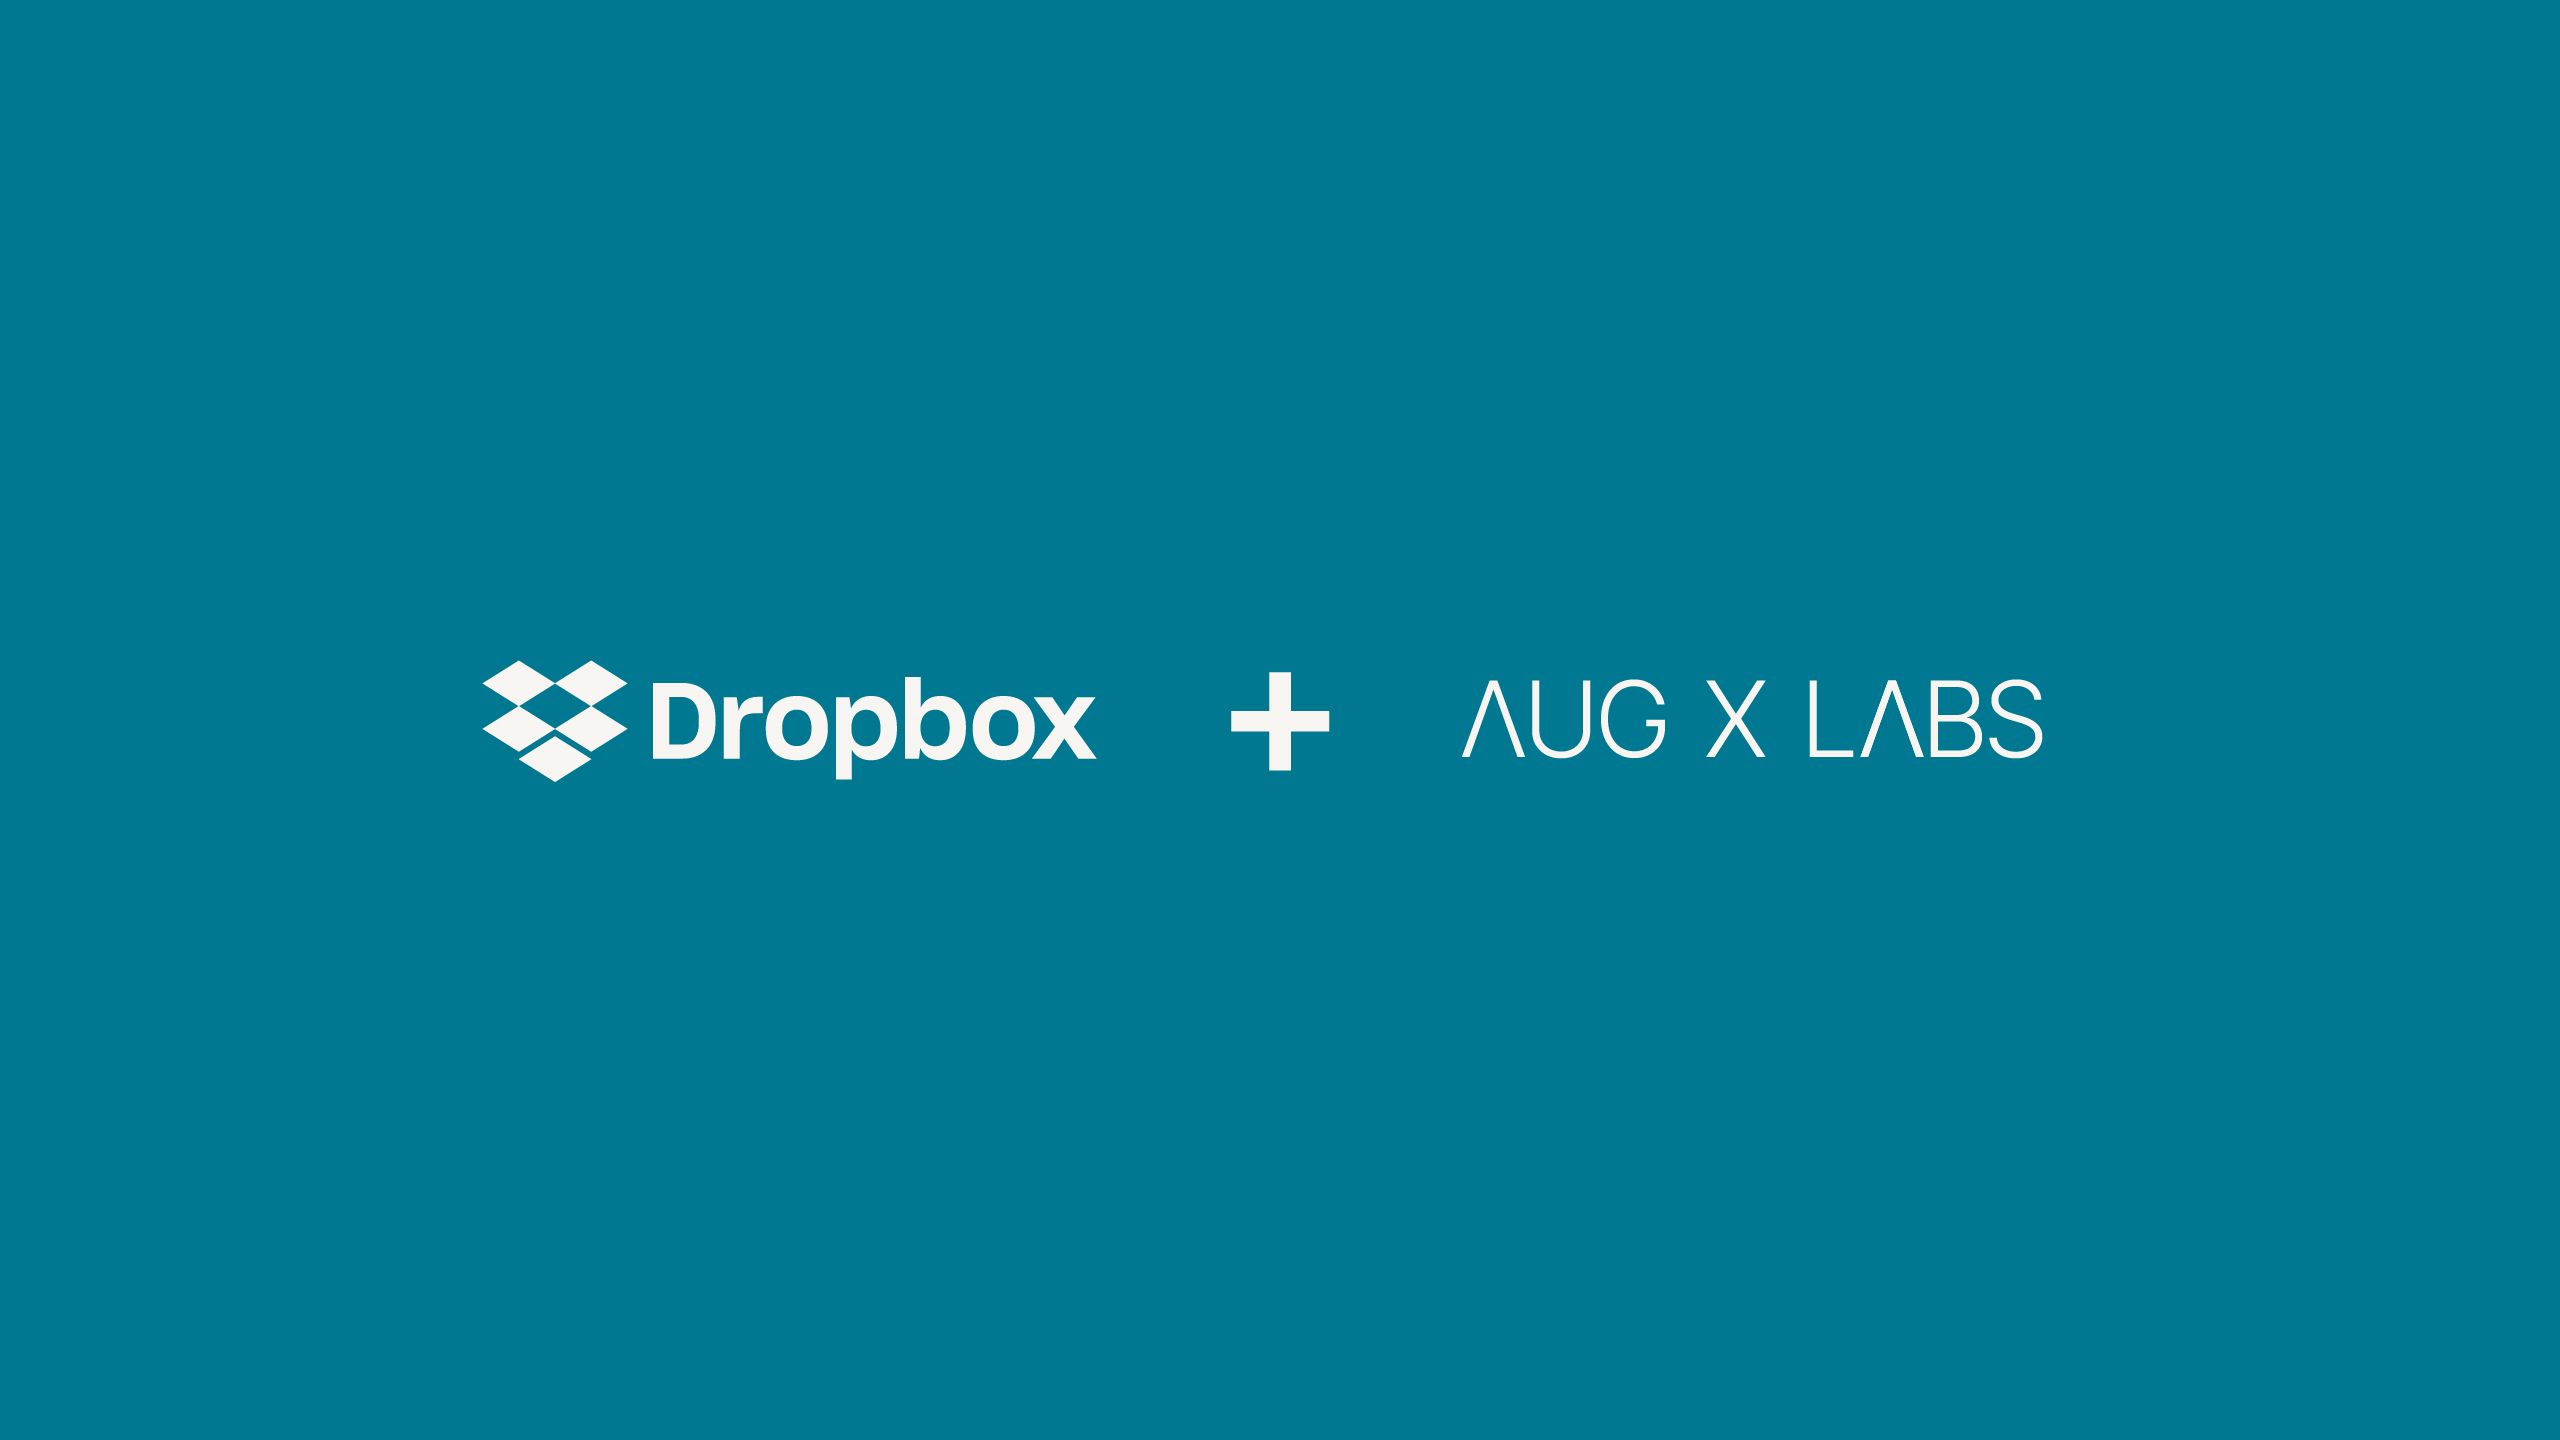 Logo for partnerskabet mellem Dropbox og AubX Labs  